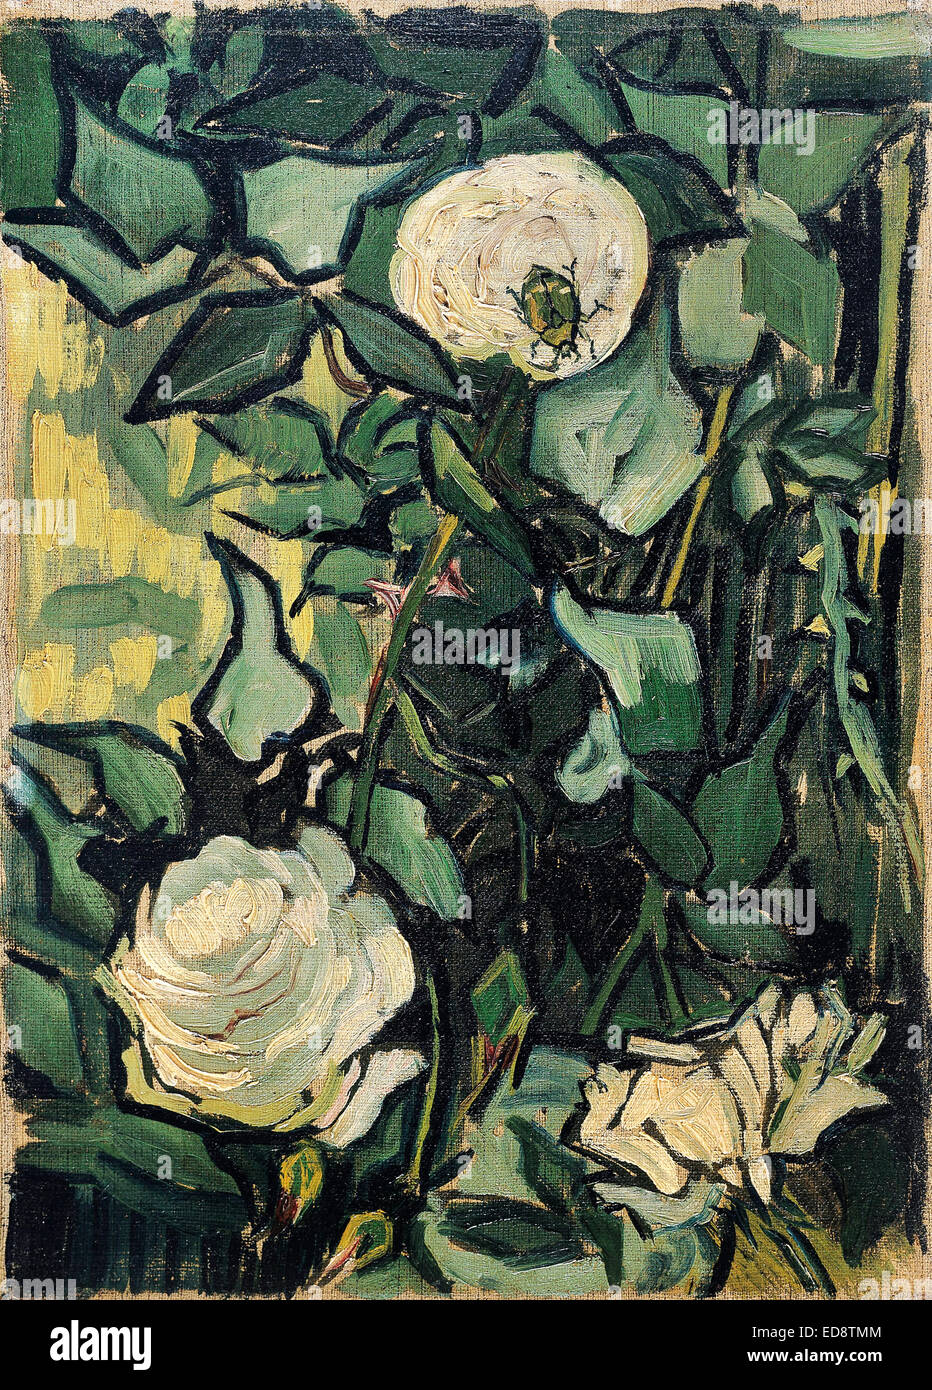 Vincent van Gogh, Roses et Beetle. 1890. Le postimpressionnisme. Huile sur toile. Van Gogh Museum, Amsterdam, Pays-Bas. Banque D'Images